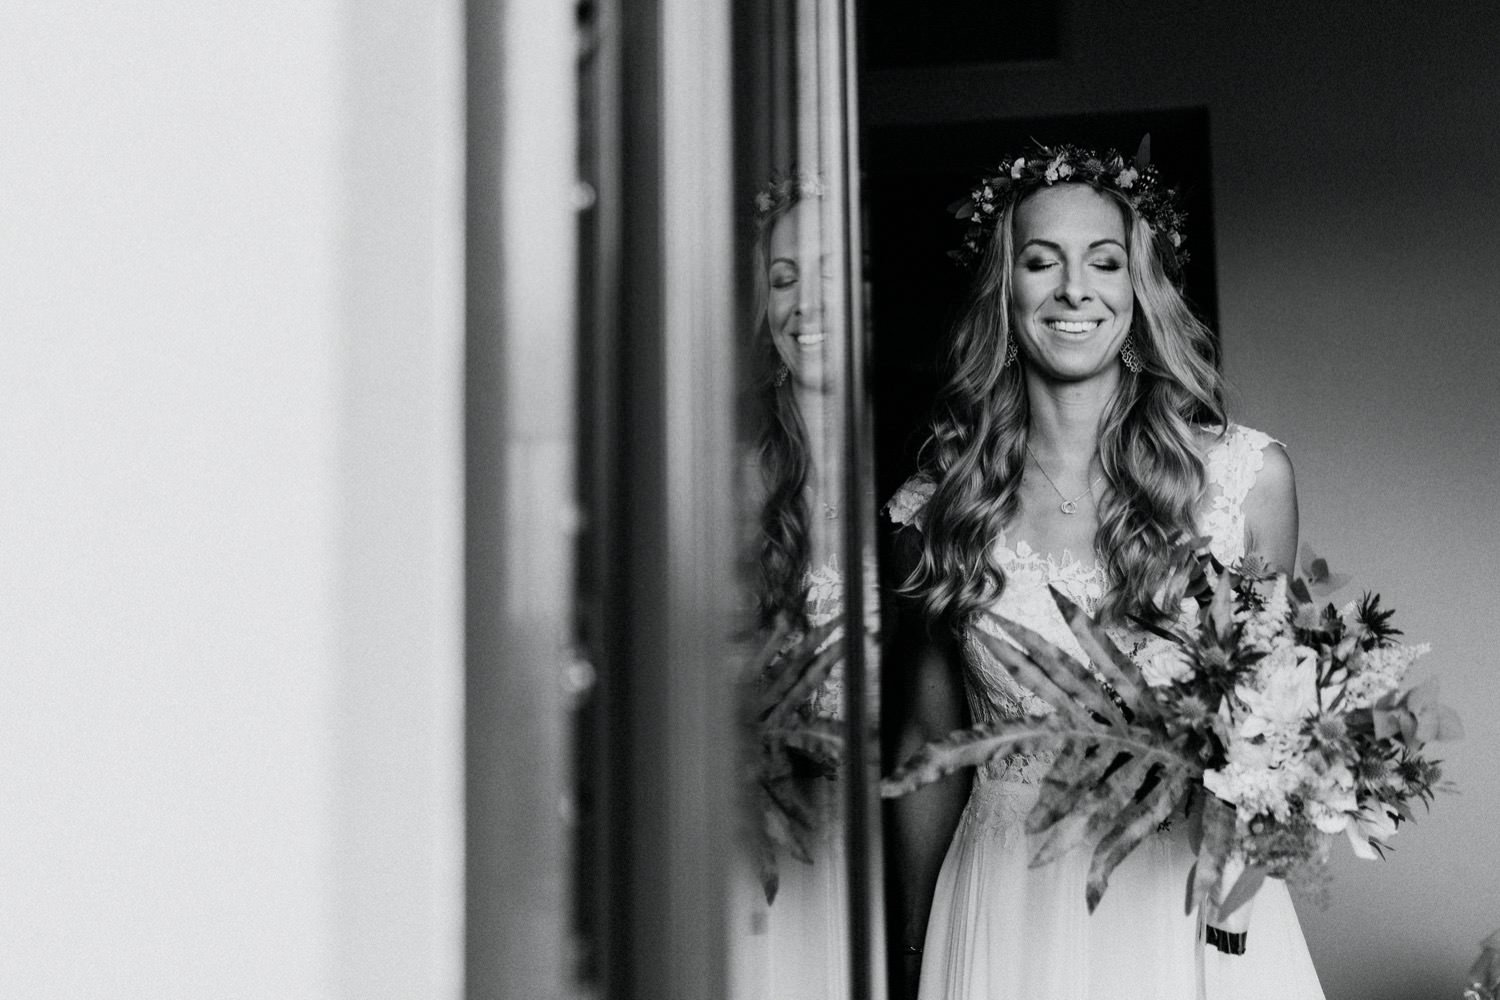 Mit geschlossenen Augen und ihrem Brautstrauß in der Hand steht die Braut vor der offenen Balkontür, um einen letzten Moment der Ruhe zu genießen, bevor sie sich auf den Weg zur Trauung begibt.